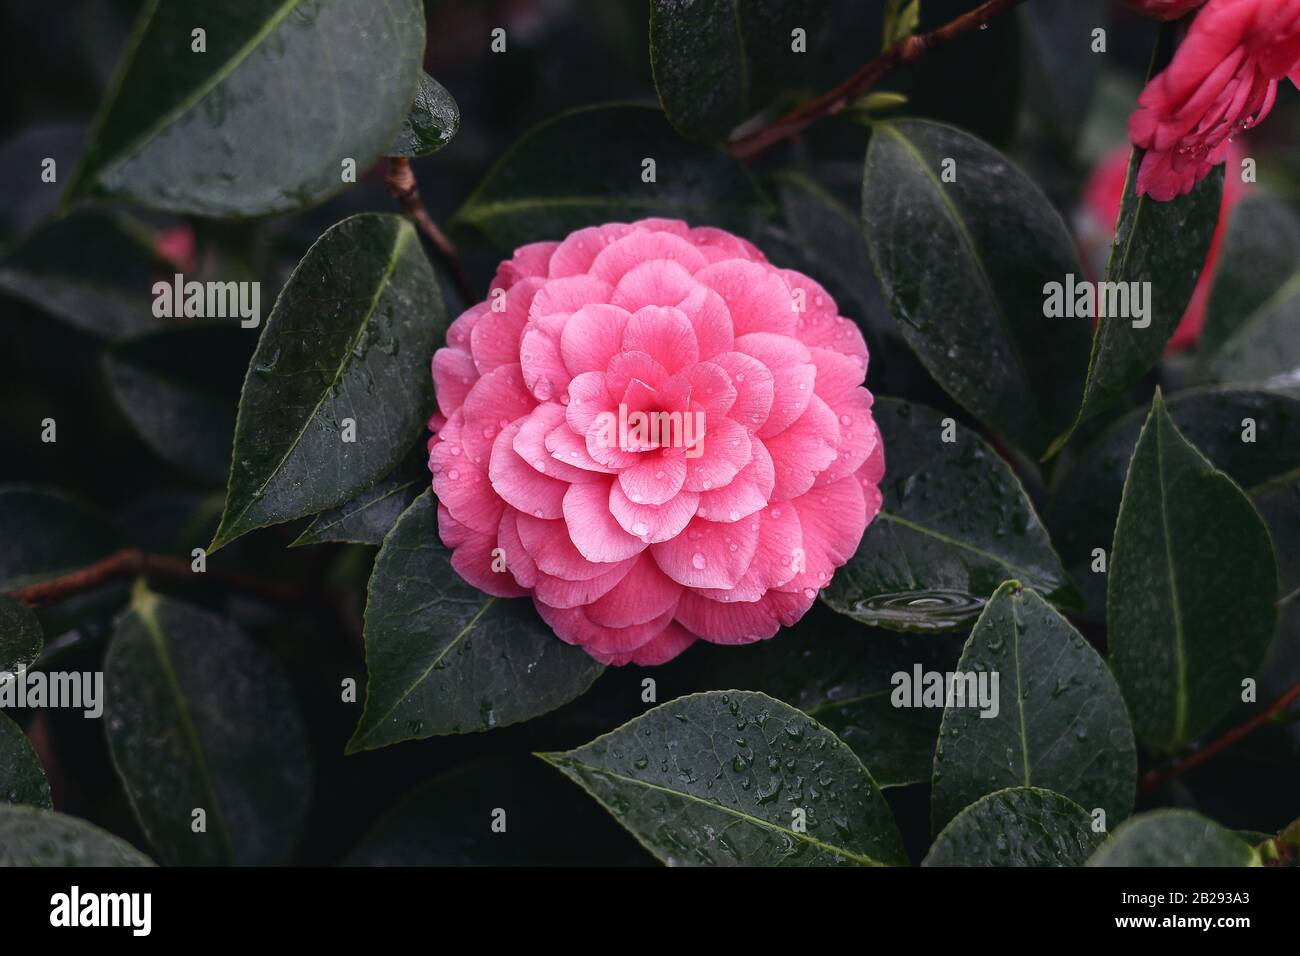 Gros plan sur la belle fleur rose pleine de camellia japonica, forme de rose. Feuilles vert foncé avec de l'eau, gouttes de rosée. Arbuste vert-vergeant en verre Banque D'Images